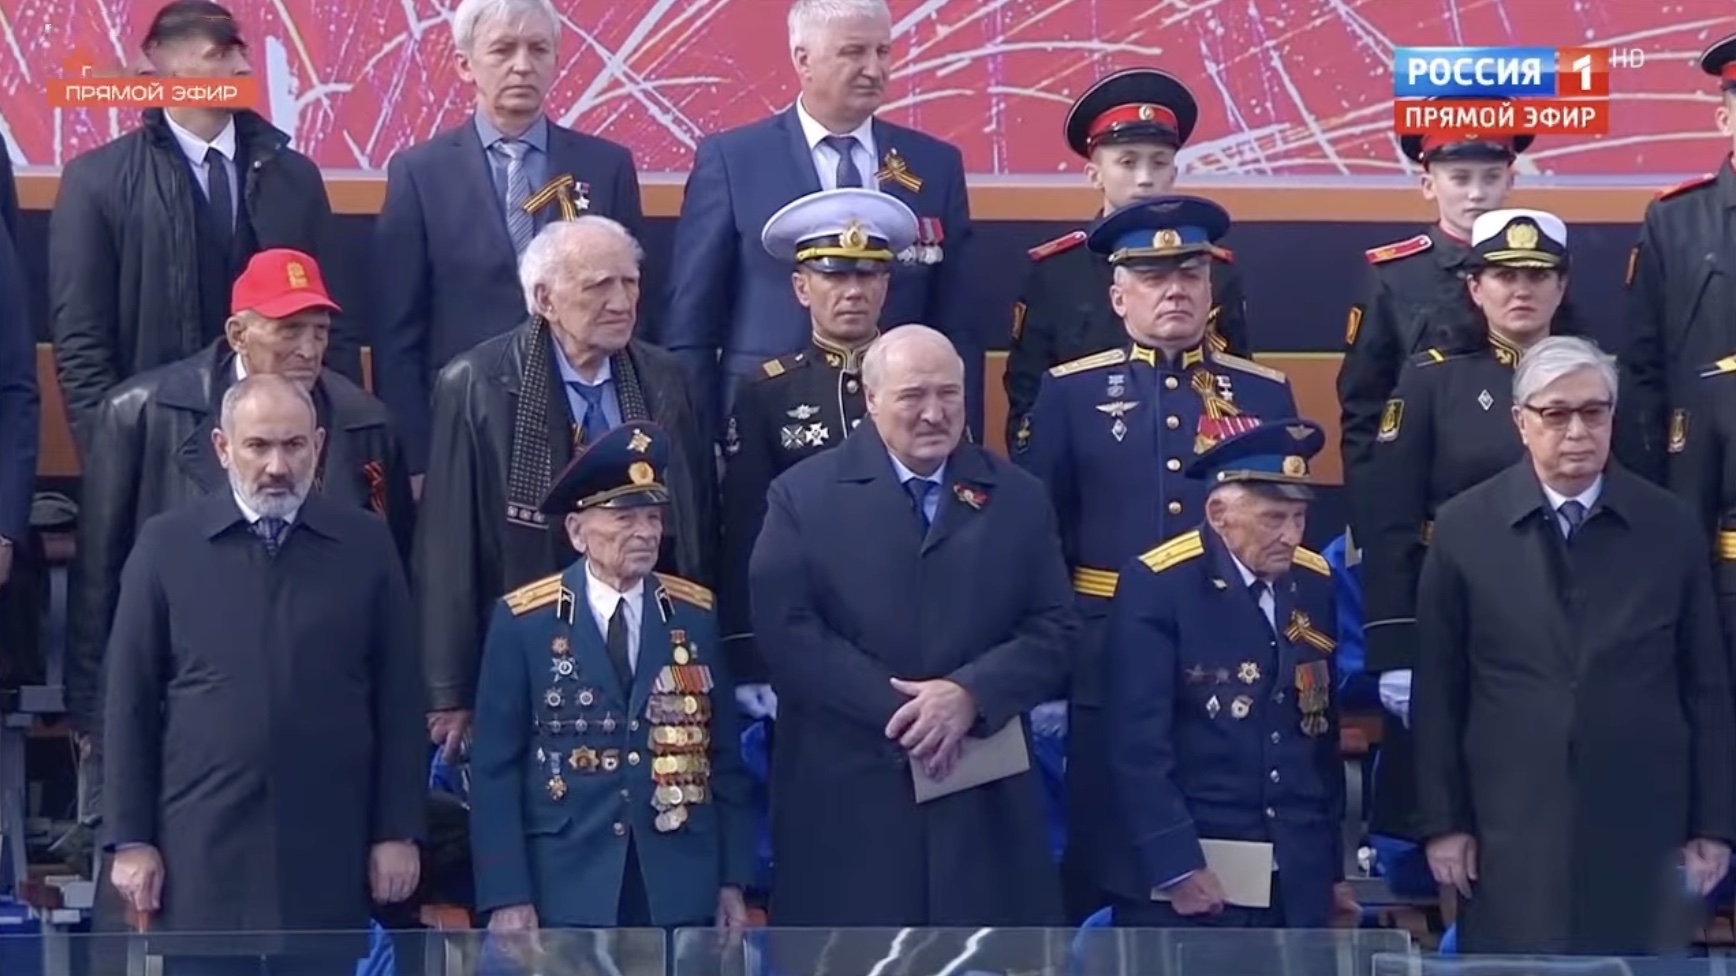 Від'їжджав у супроводі швидкої. Лукашенка могли отруїти на параді Путіна в Москві – Mirror